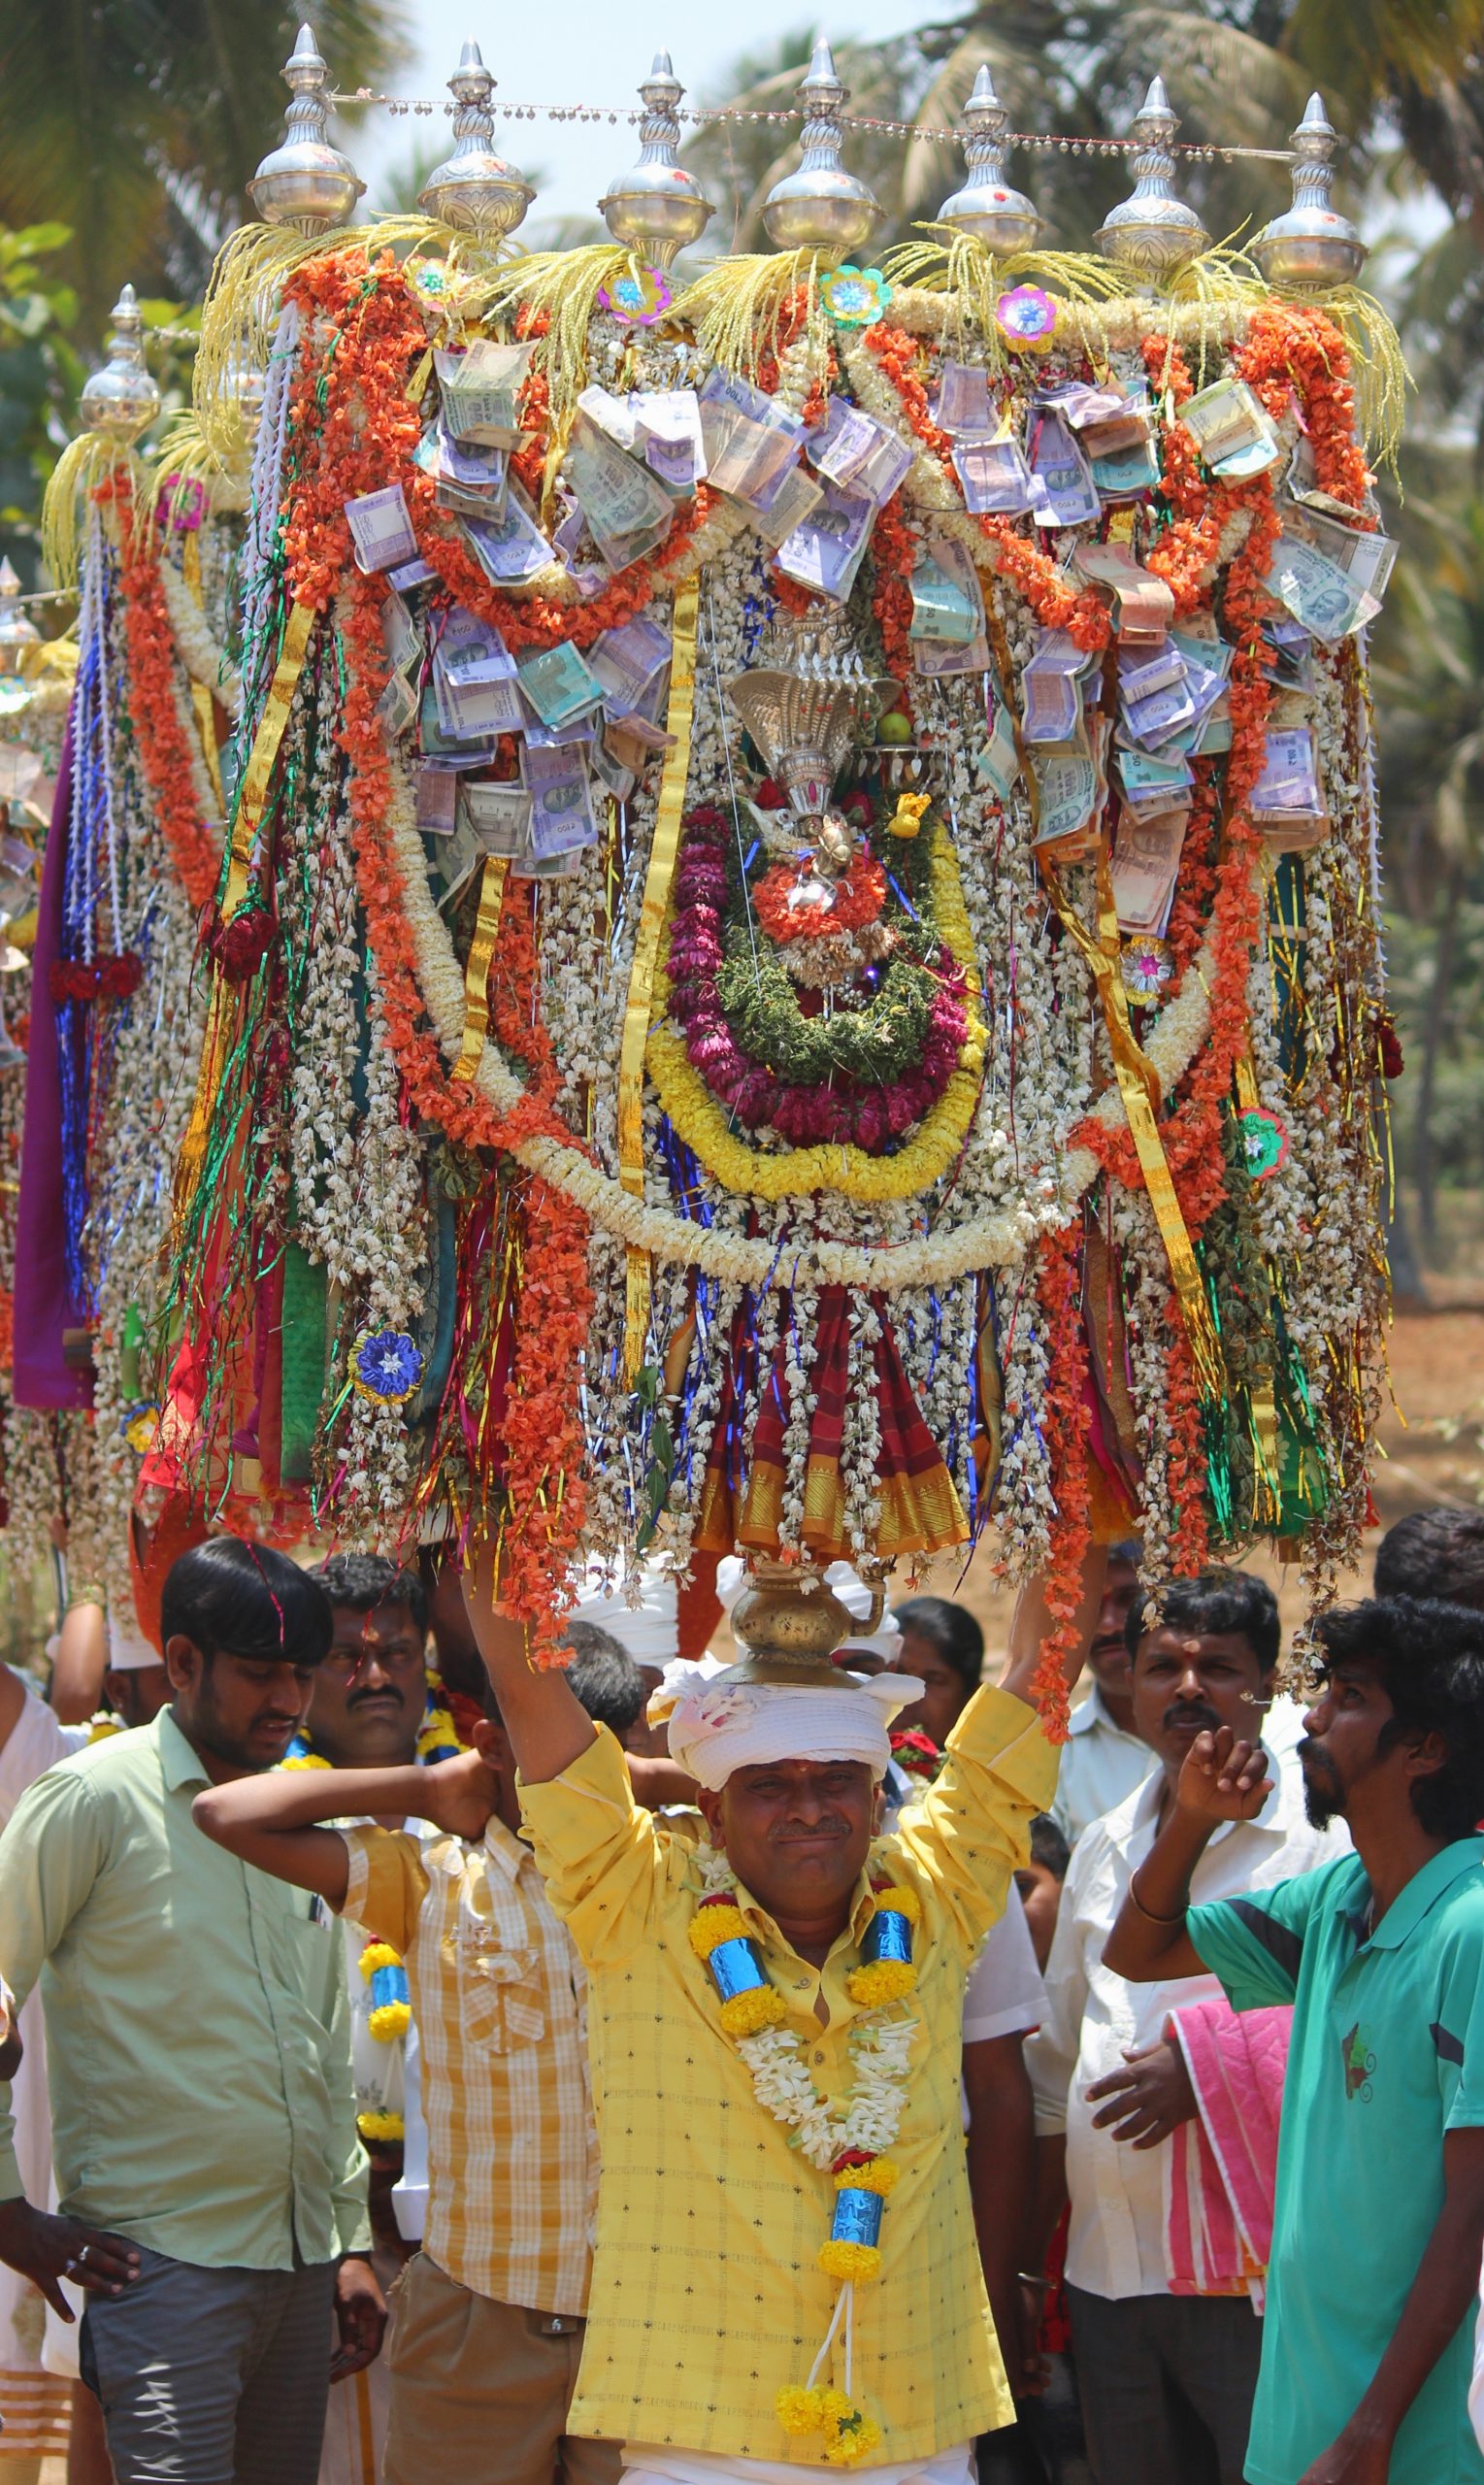 Celebrating Indian festival on street